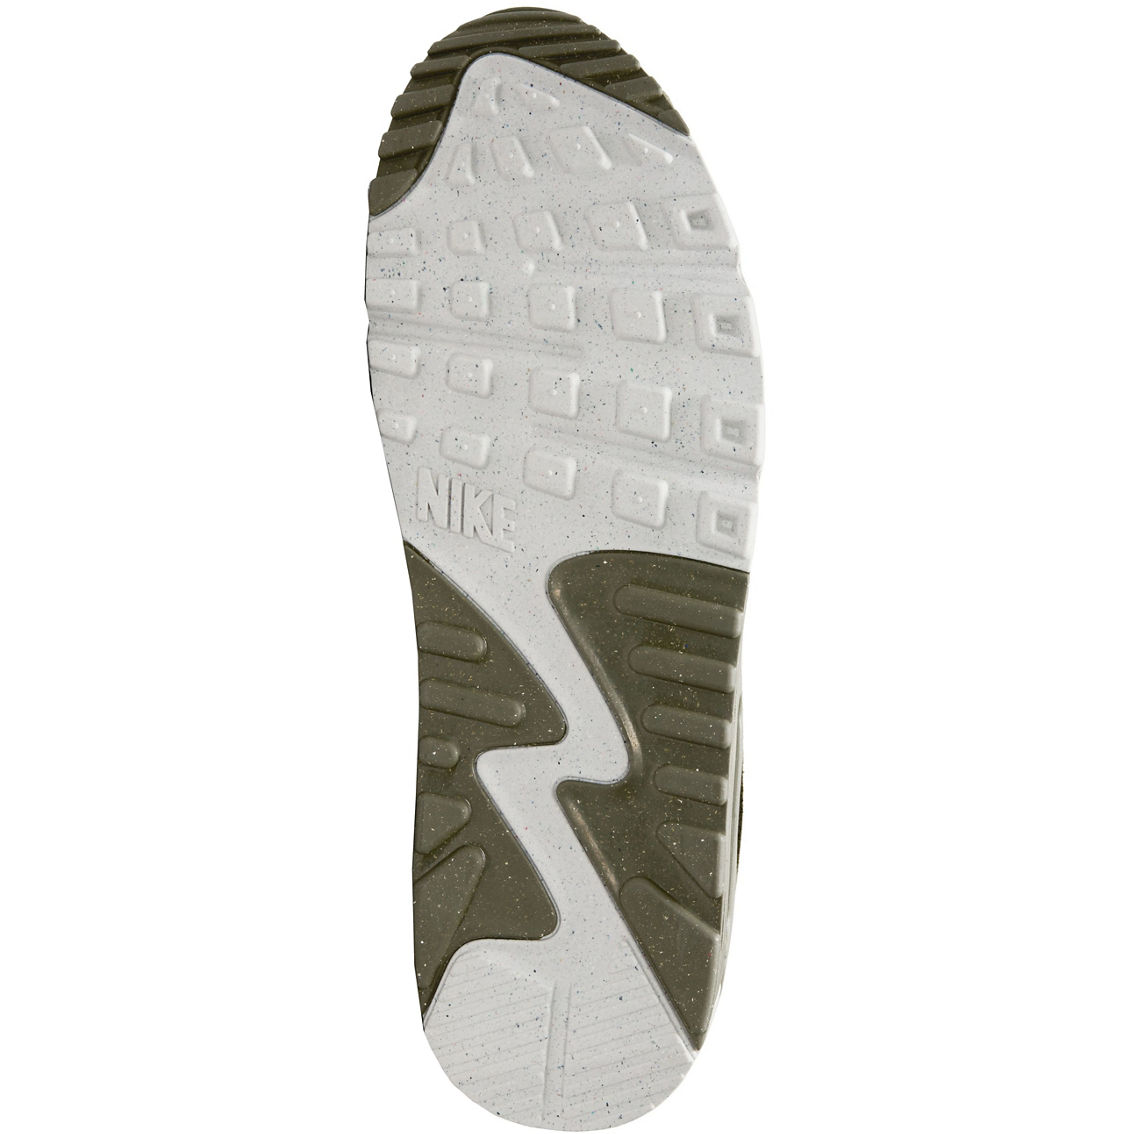 Nike Air Max 90 Sneakers - Image 5 of 8